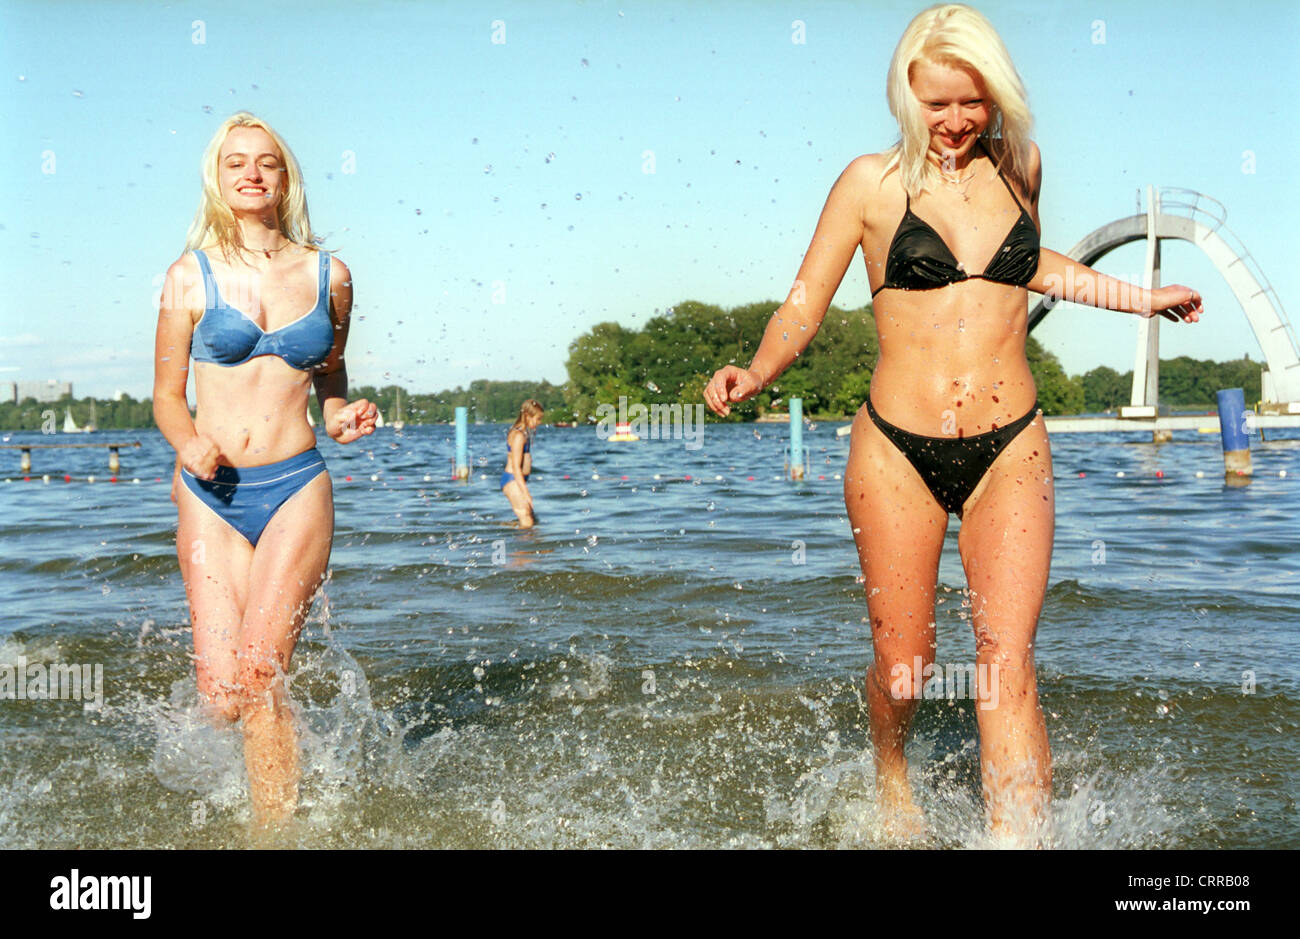 Artefact Goot bellen Women Bathing in Lake Tegel in Berlin Stock Photo - Alamy